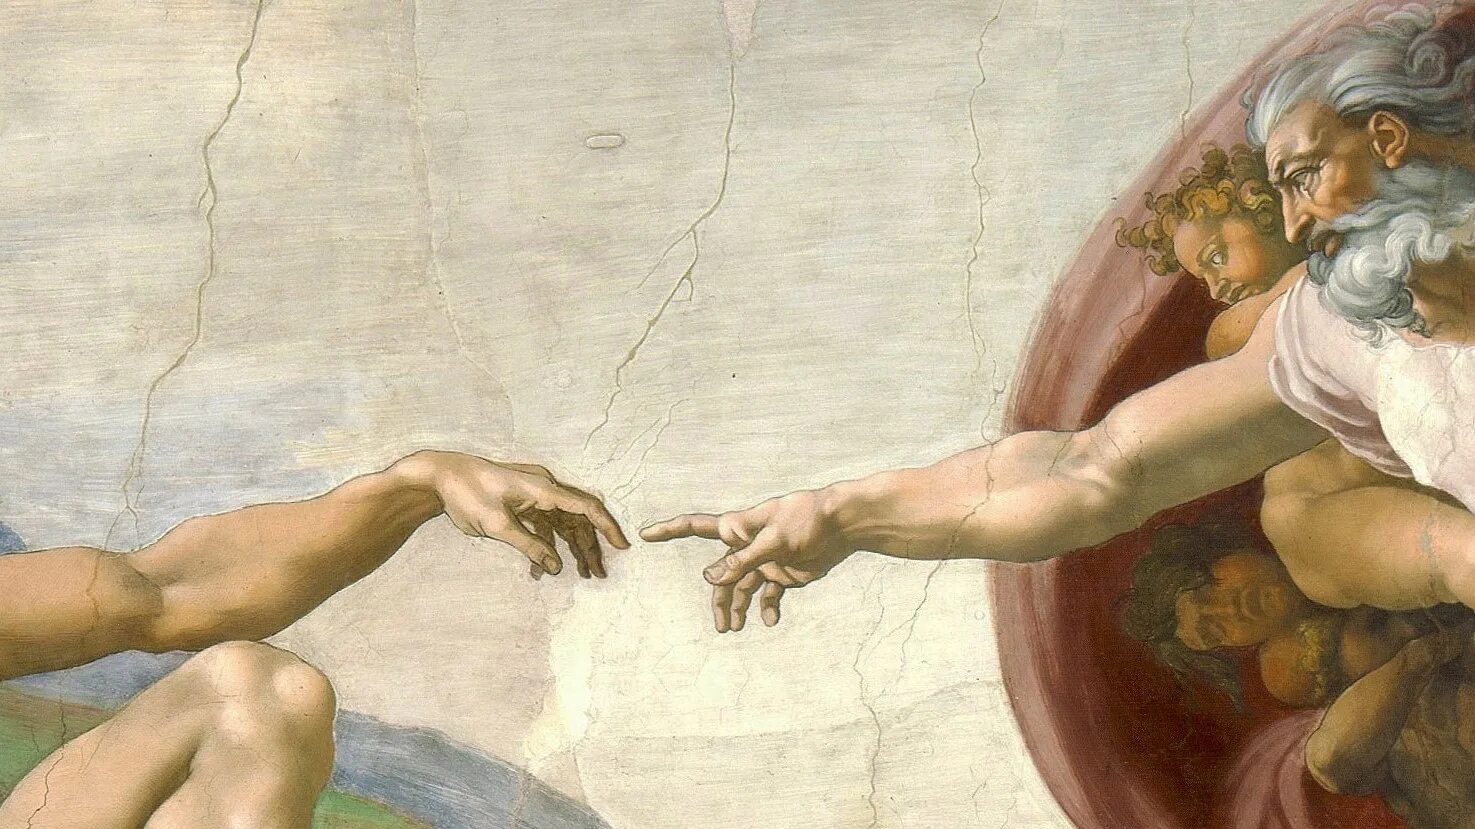 Почему тянут пальцы. Микеланджело Сотворение Адама. "Сотворение Адама" Микеланджело, 1511. Микеланджело Буонарроти руки. Сотворение Адама (1512), Микеланджело Буонарроти.